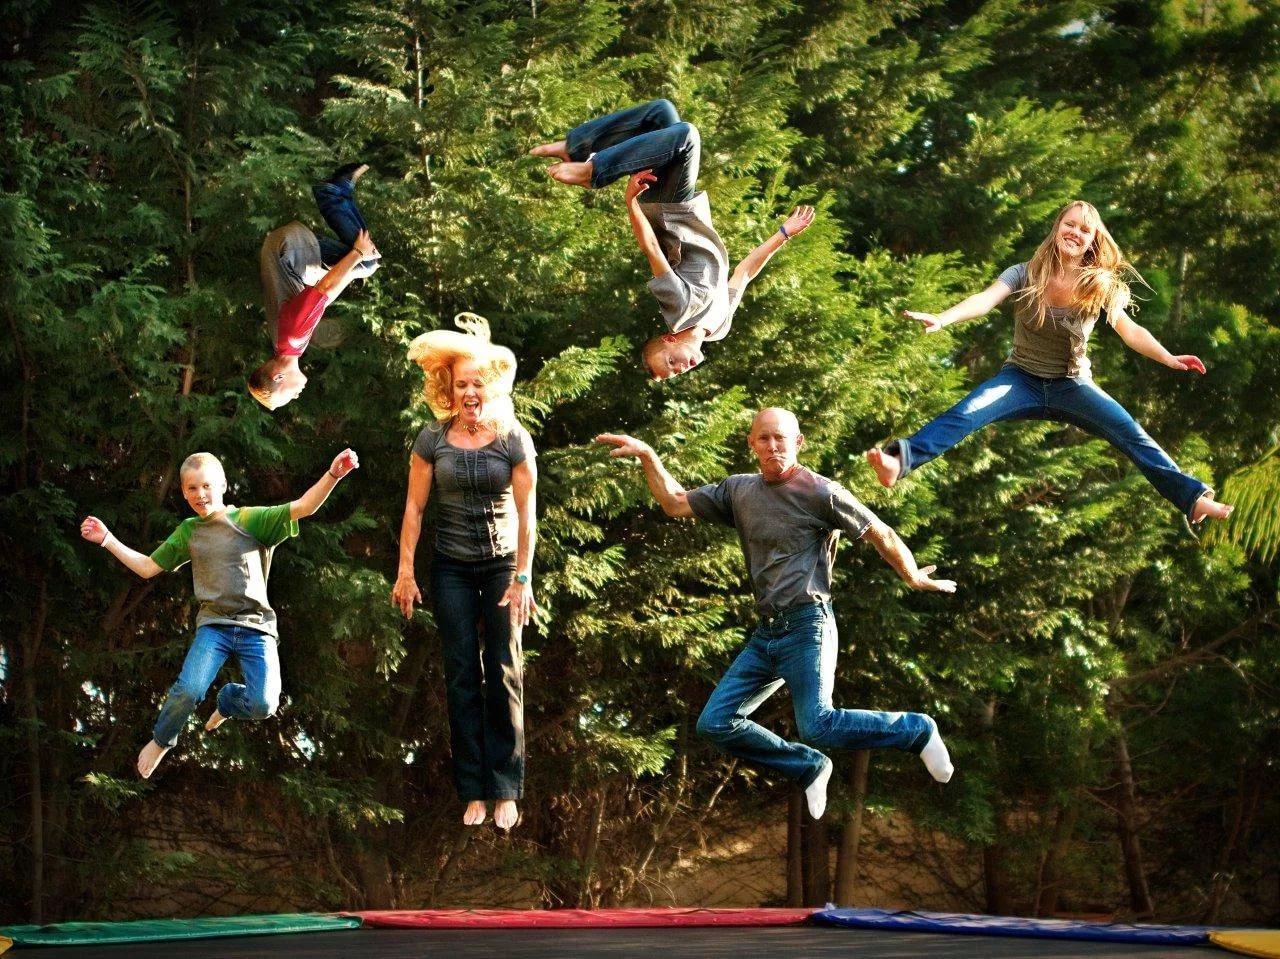 Развлечения классом. Дети на батуте. Развлечения на природе. Человек прыгает на батуте. Дети в прыжке.